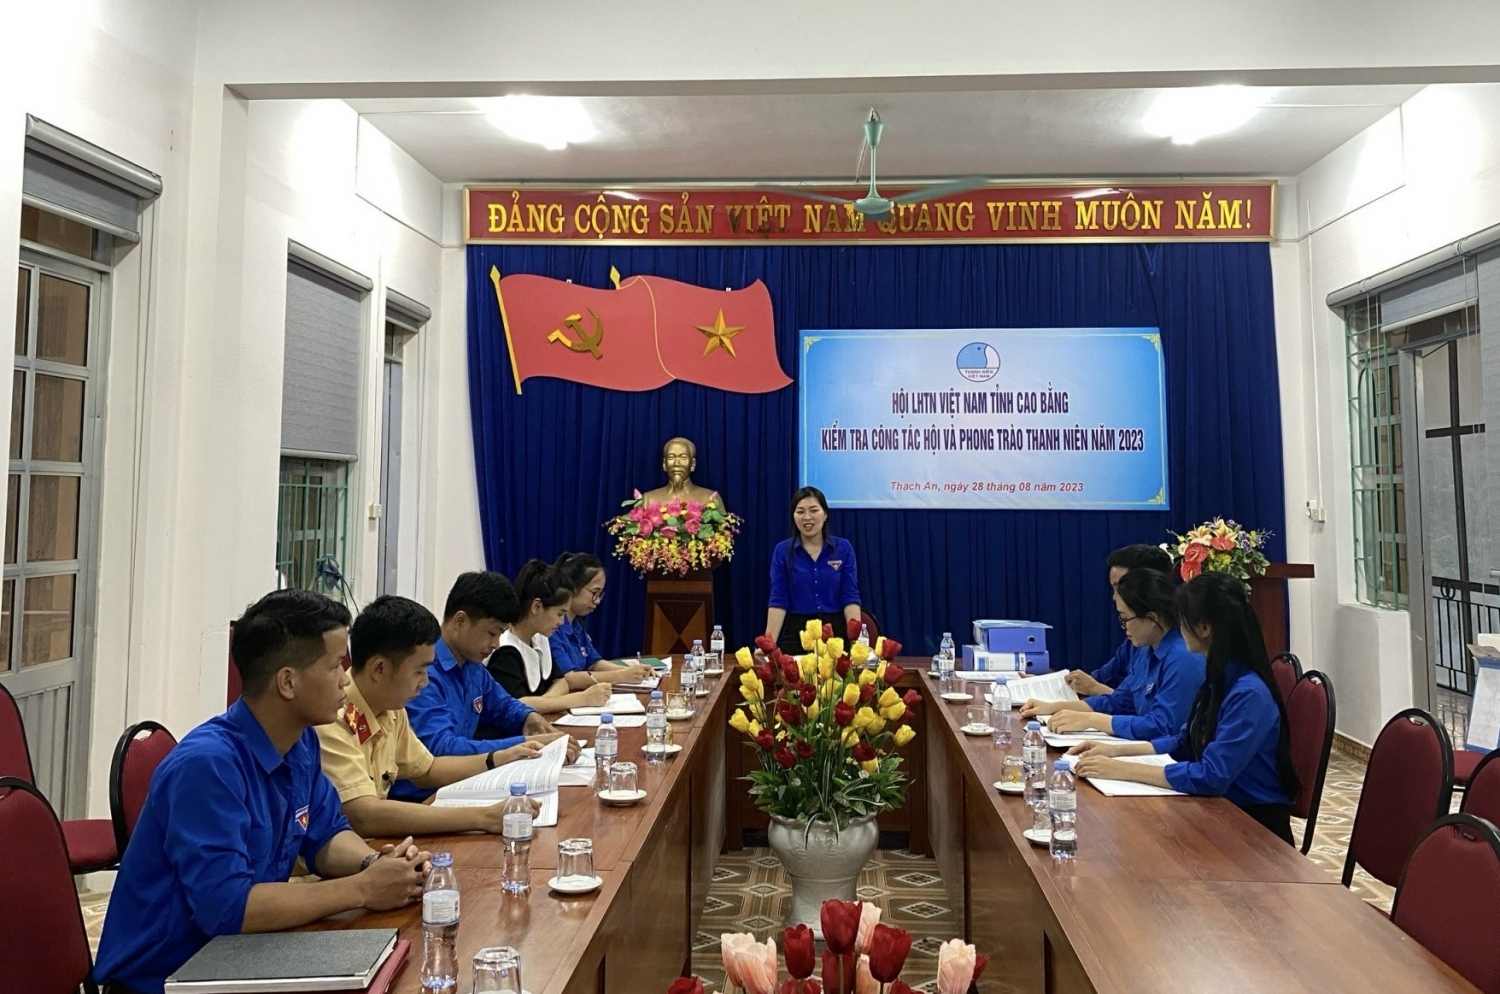 Hội LHTN Việt Nam tỉnh kiểm tra công tác Hội tại Thạch An